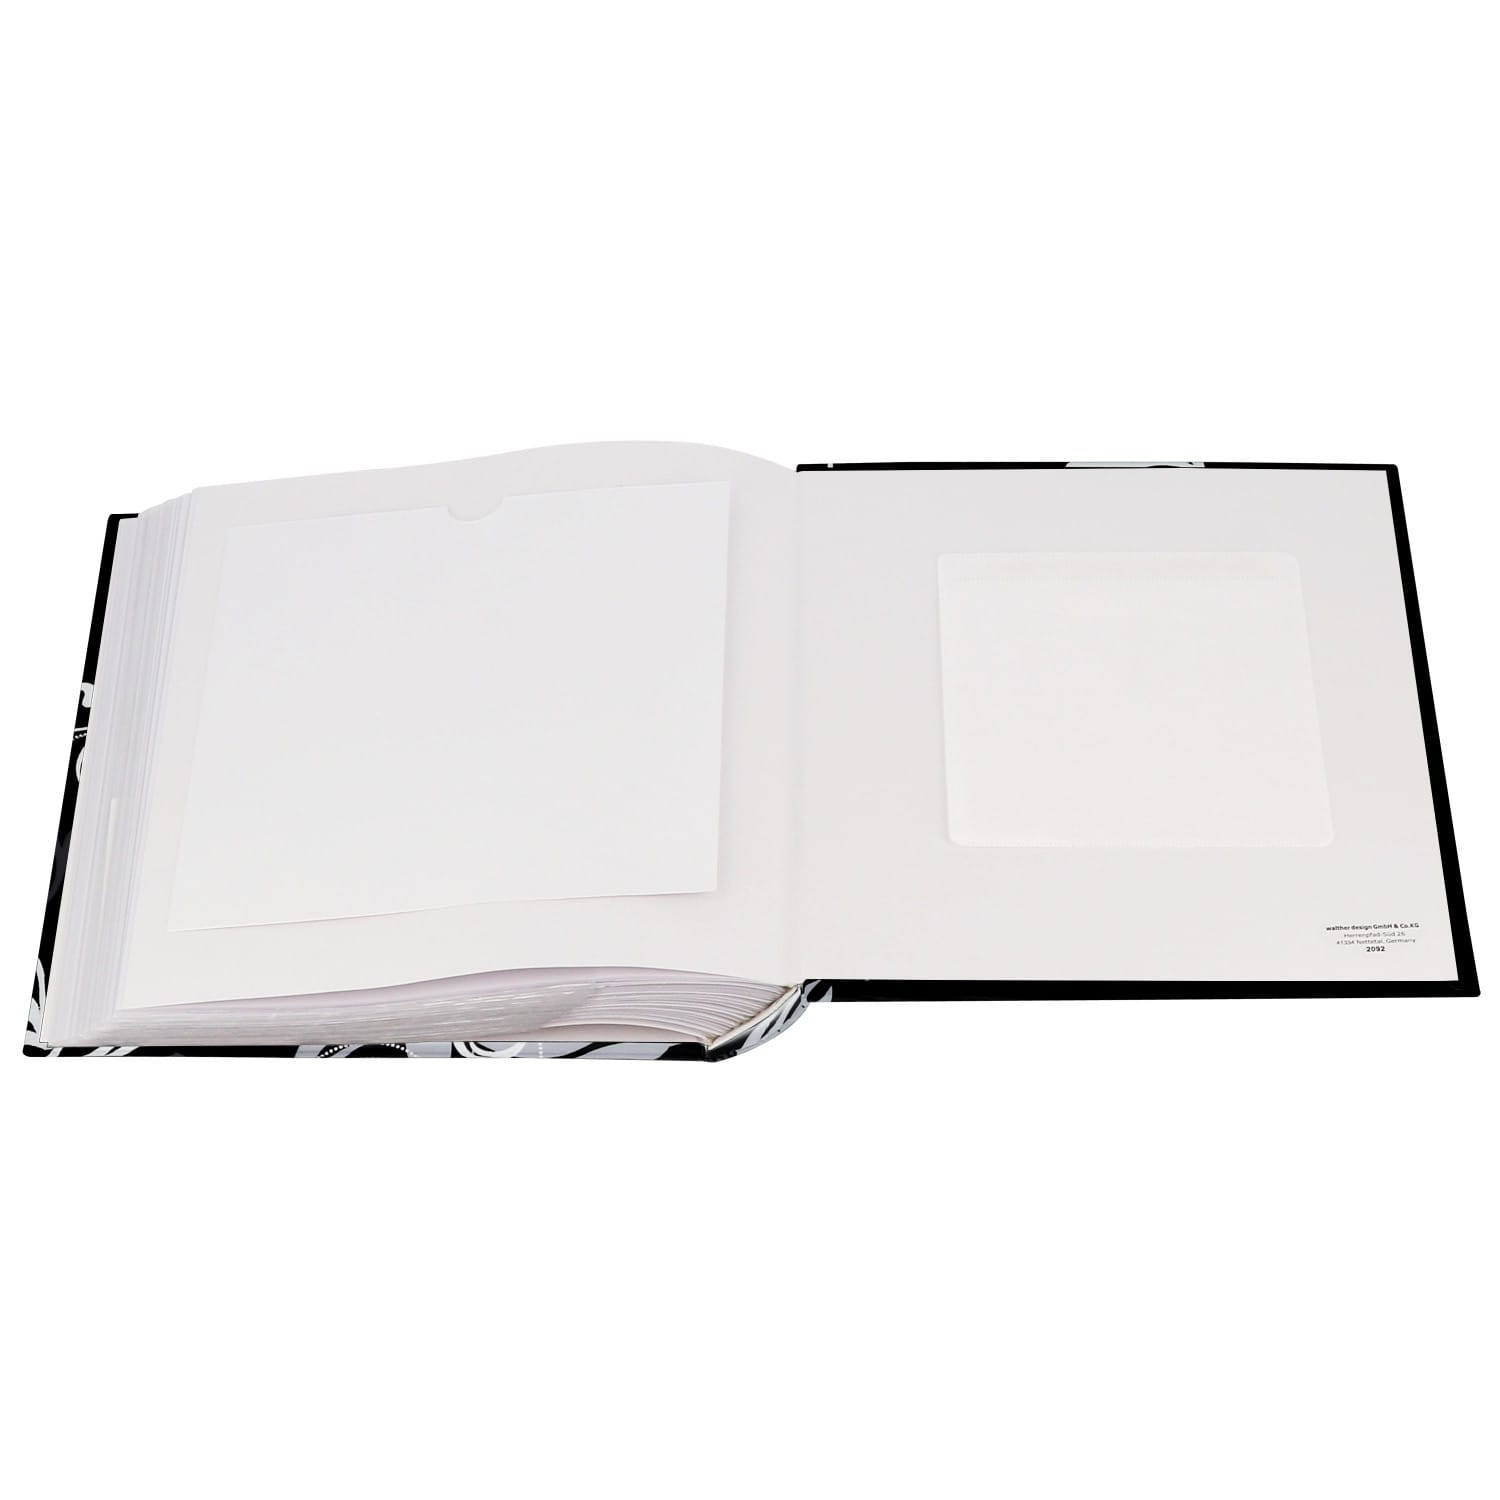 Album photo ERICA pochettes avec mémo HARMONIE - 100 pages blanches - 200  photos - Couverture Rose Corail 20,5x22cm + fenêtre